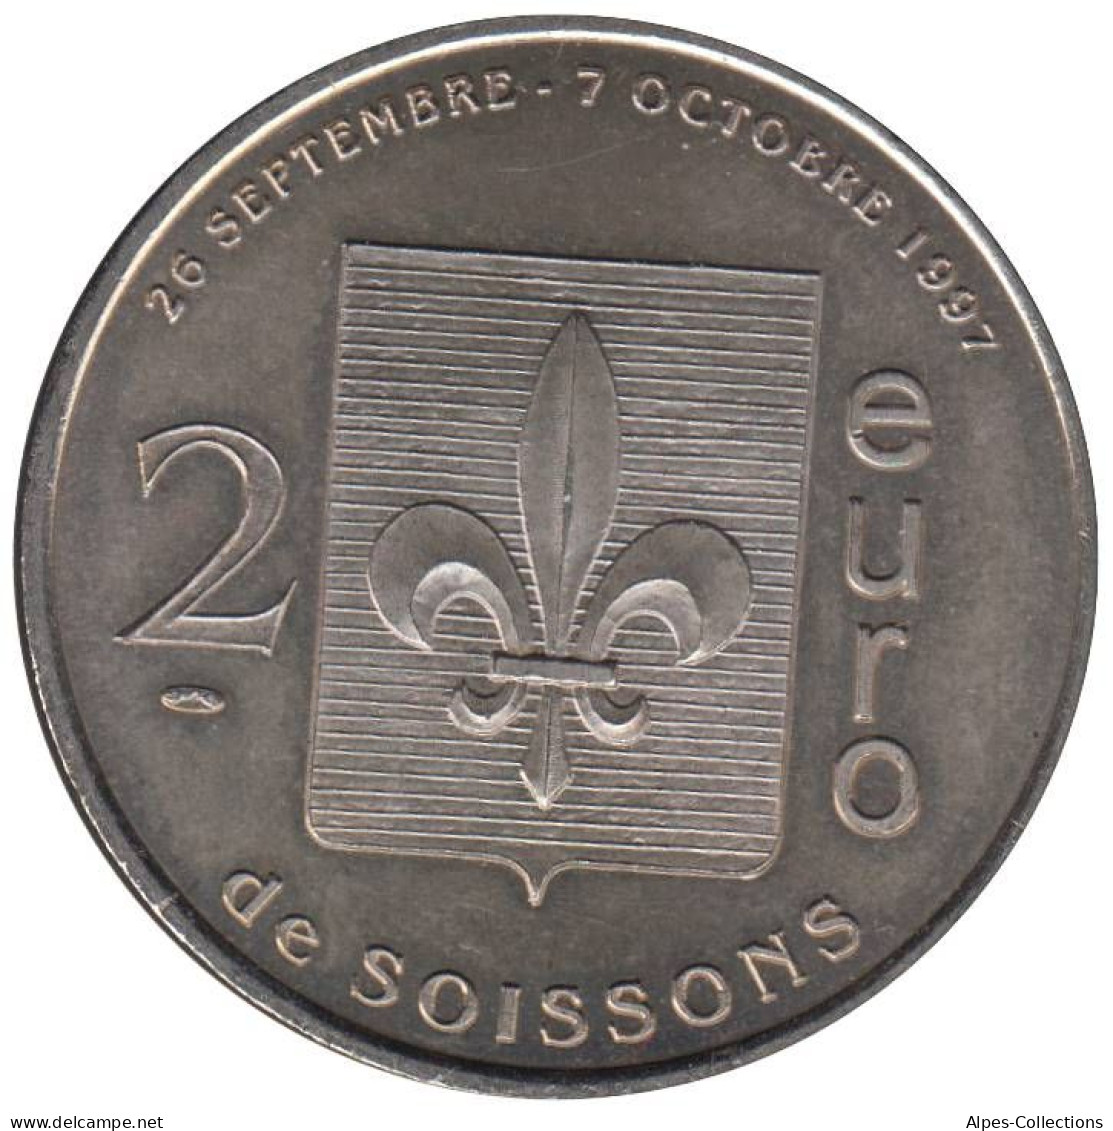 SOISSONS - EU0020.1 - 2 EURO DES VILLES - Réf: T392 - 1997 - Euros Of The Cities